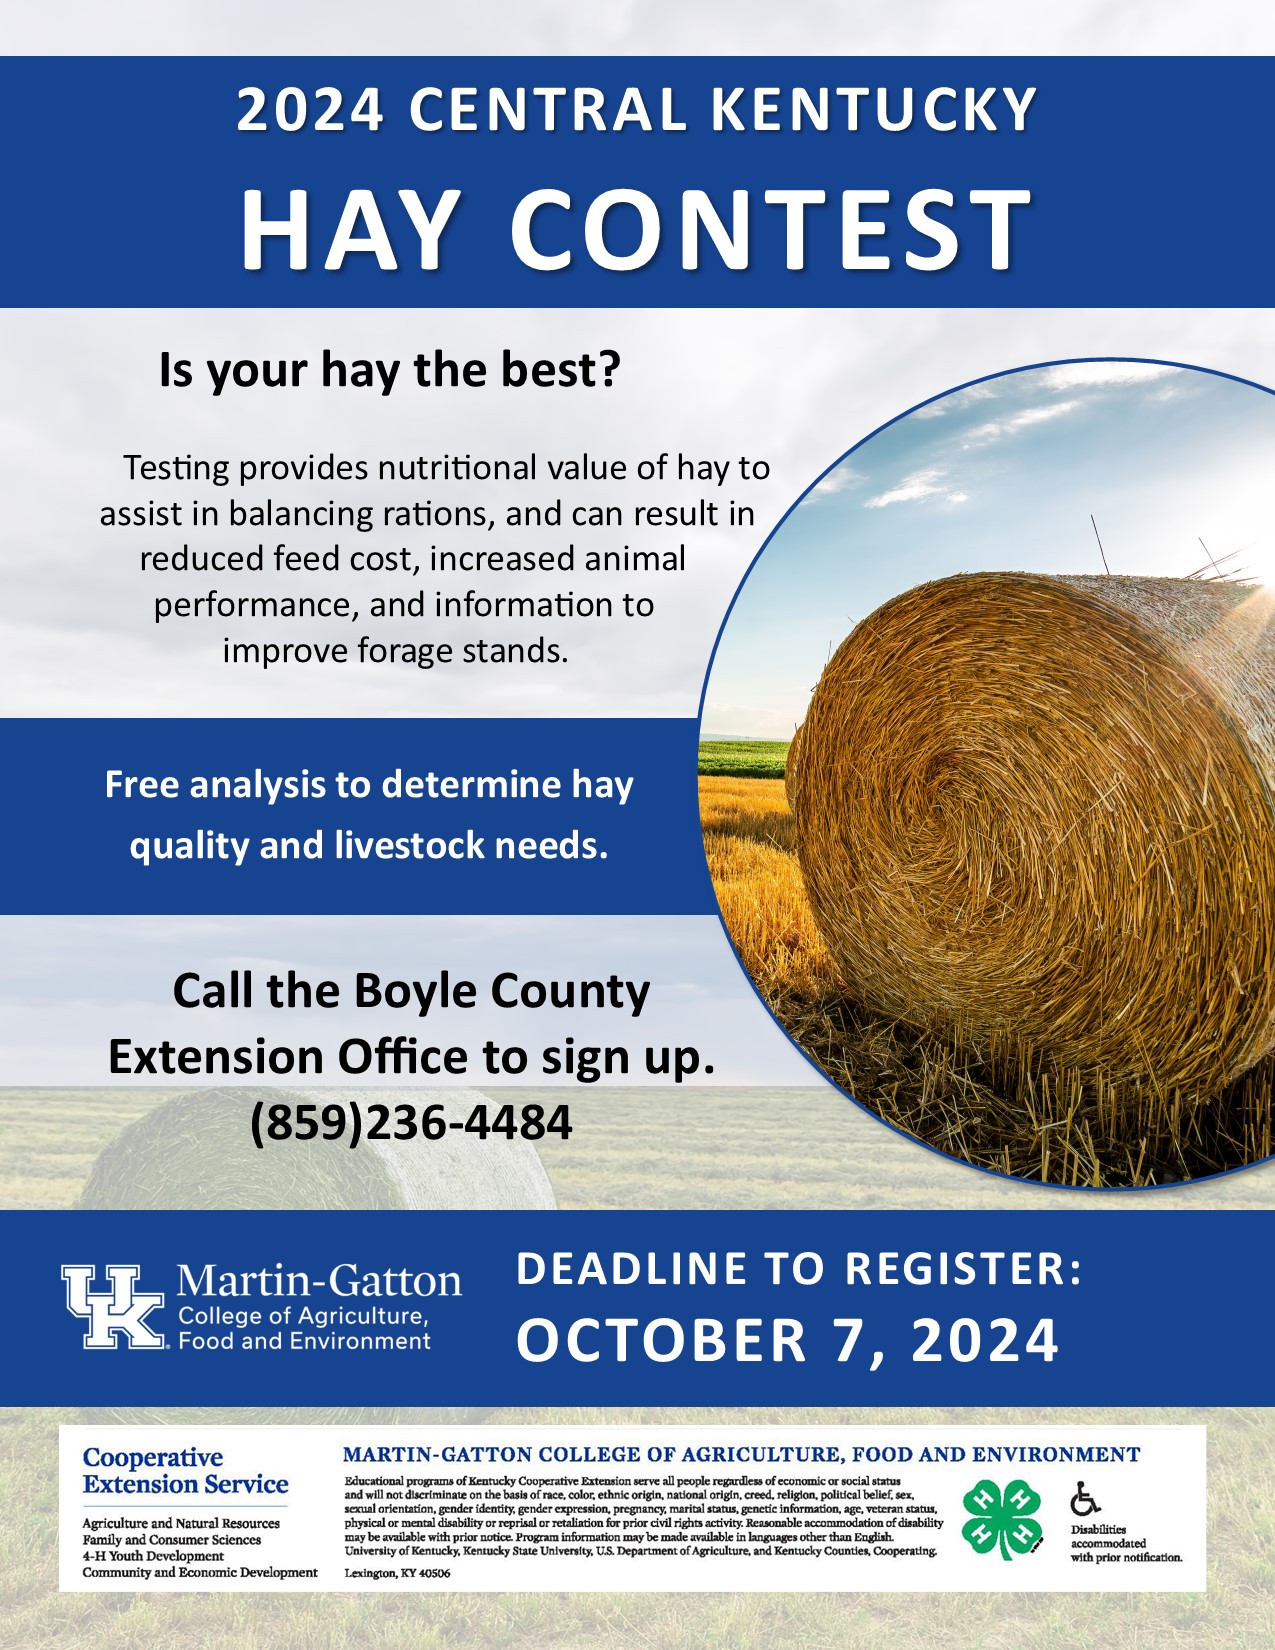 2024 Hay Contest